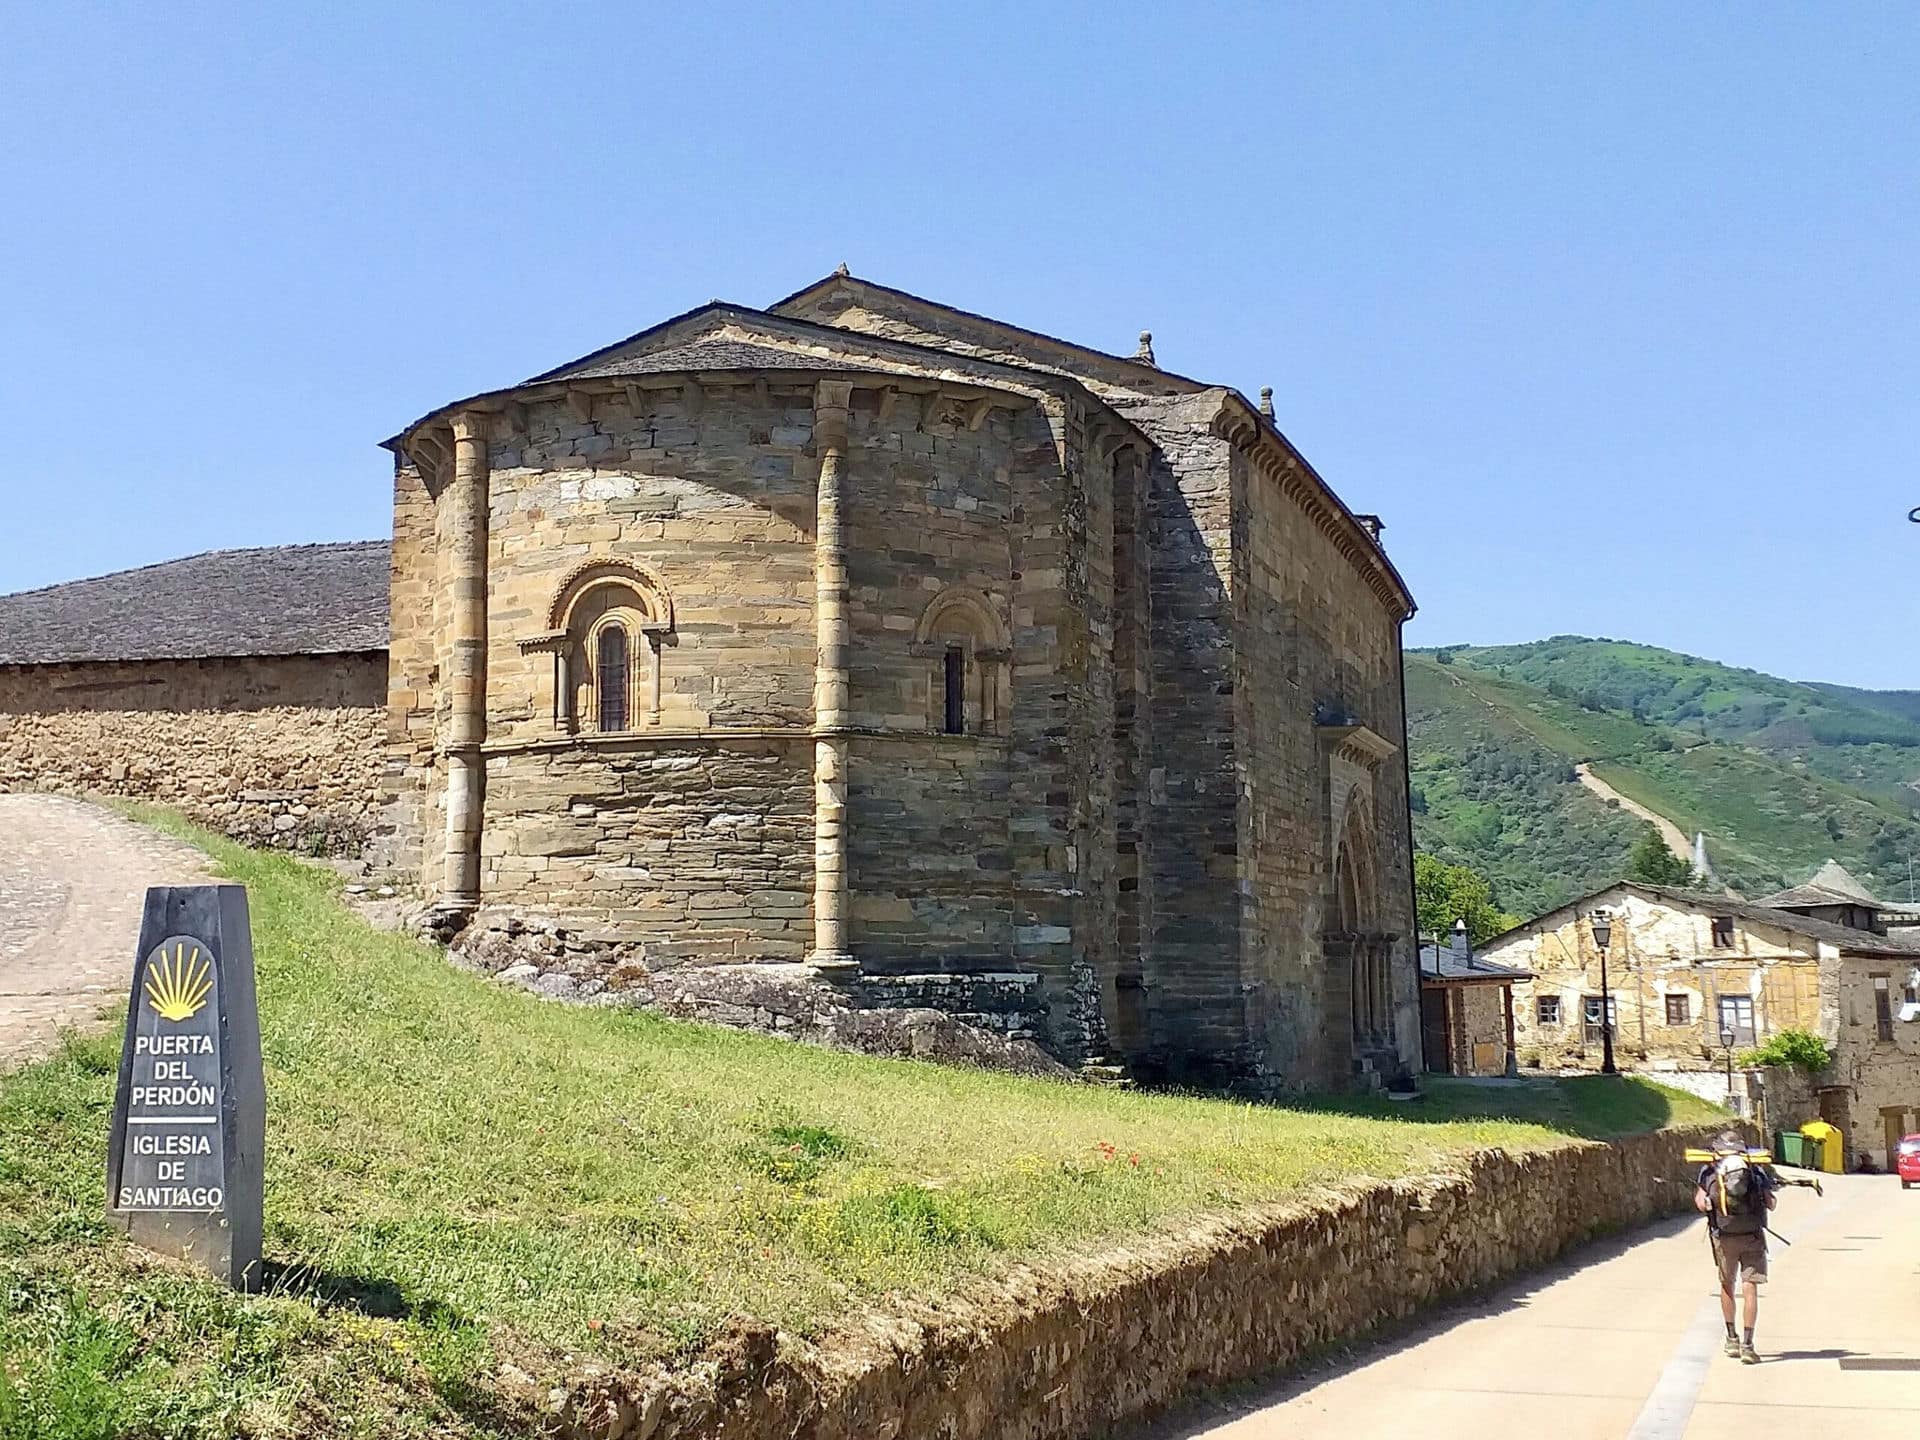 The Church of Santiago in Villafranca del Bierzo